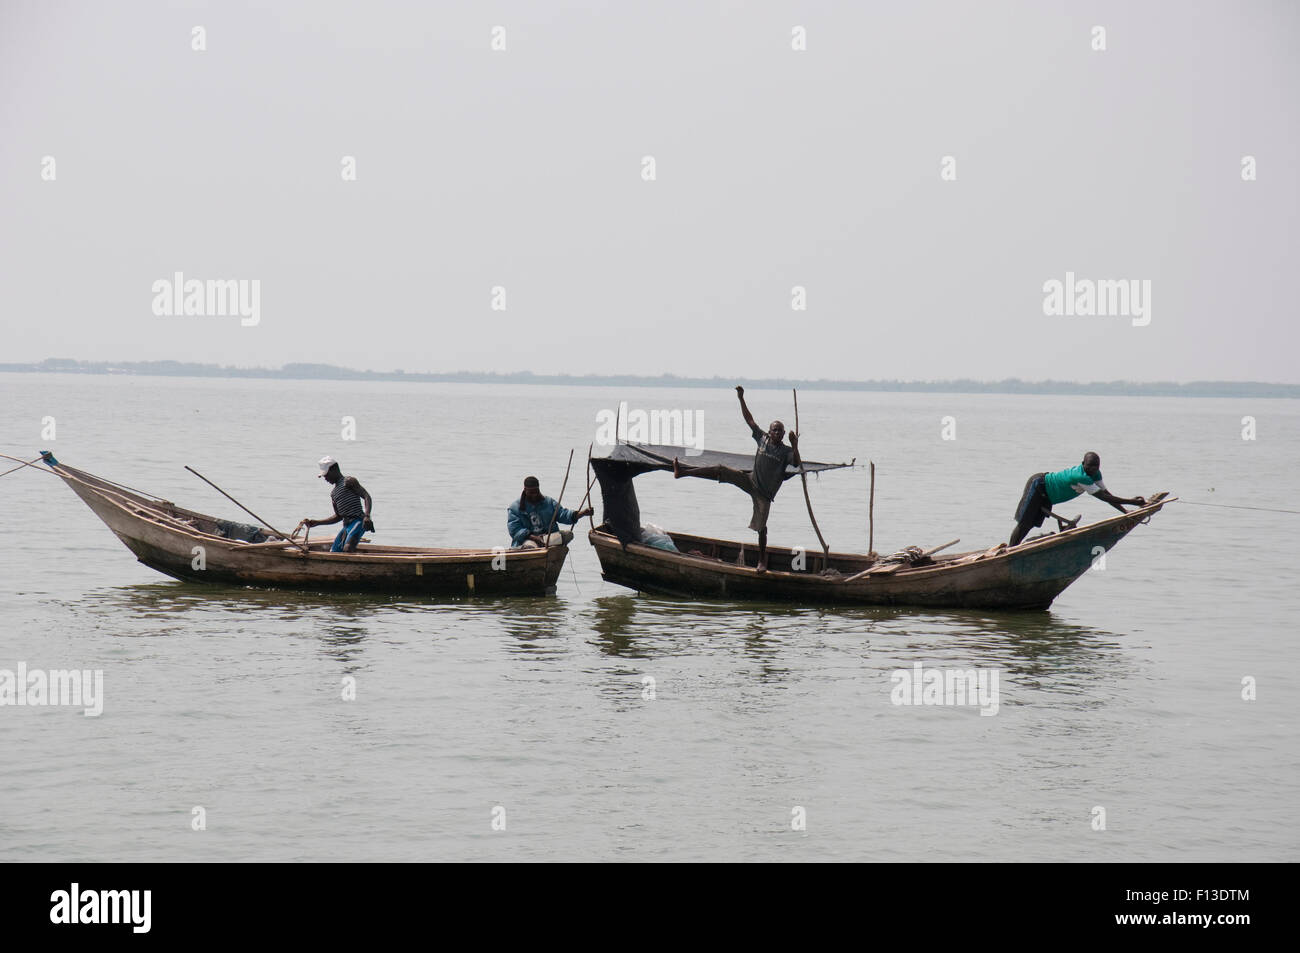 Les pêcheurs en bateaux sur le lac Albert à la frontière de la République démocratique du Congo et en Ouganda, République démocratique du Congo, Afrique, janvier 2012. Banque D'Images